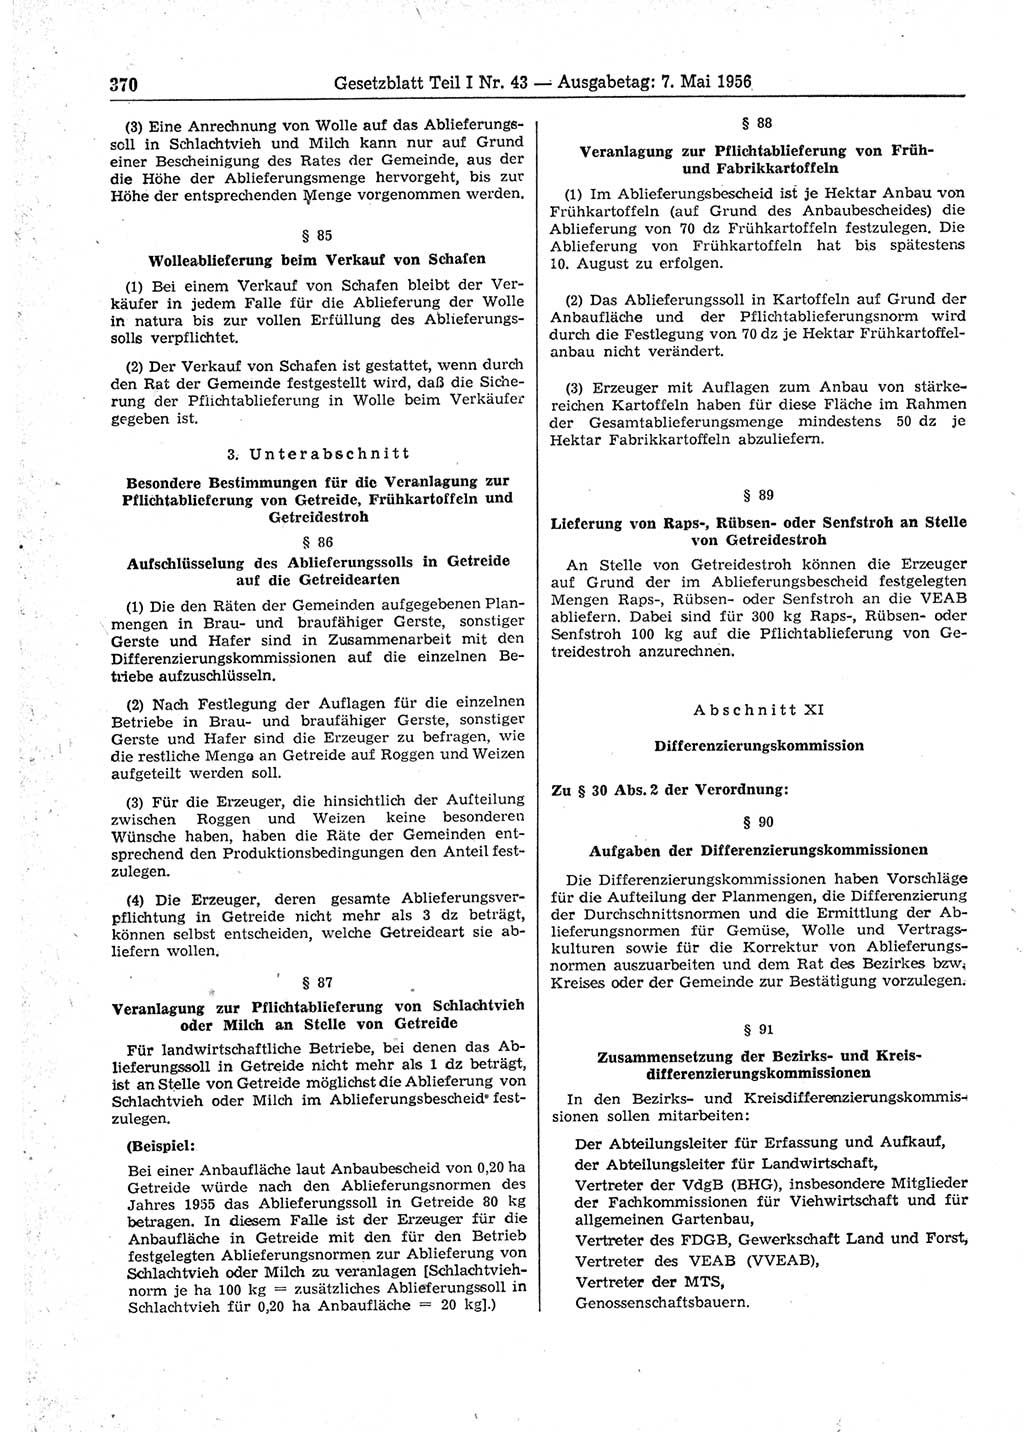 Gesetzblatt (GBl.) der Deutschen Demokratischen Republik (DDR) Teil Ⅰ 1956, Seite 370 (GBl. DDR Ⅰ 1956, S. 370)